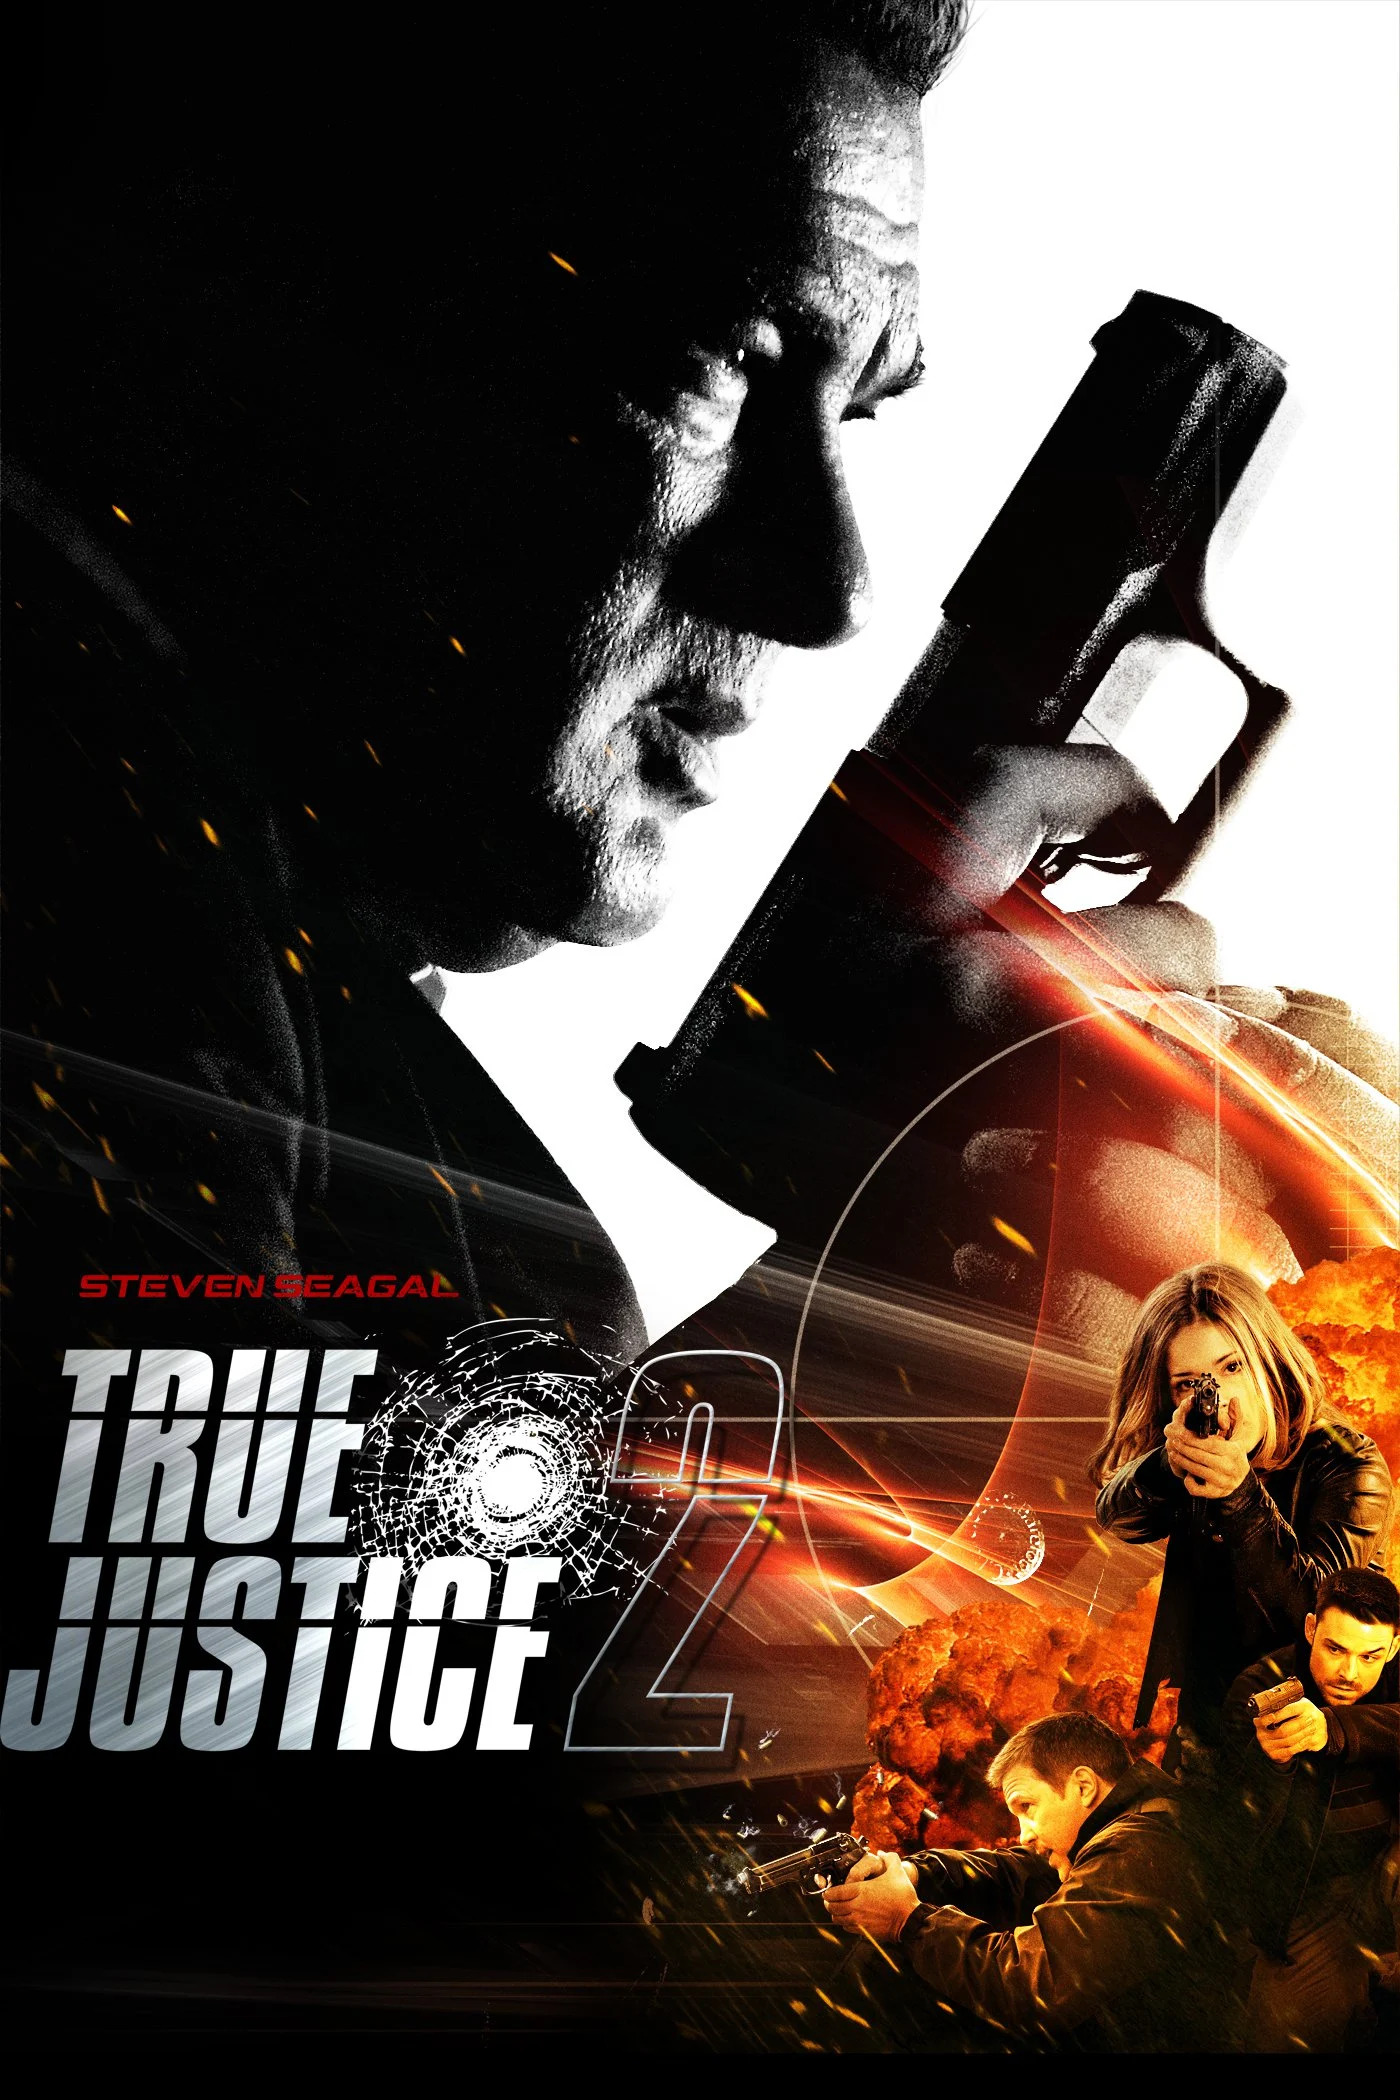 ดูหนังออนไลน์ True Justice 2012 ปฏิบัติการฆ่าไร้เงา nunghdmai